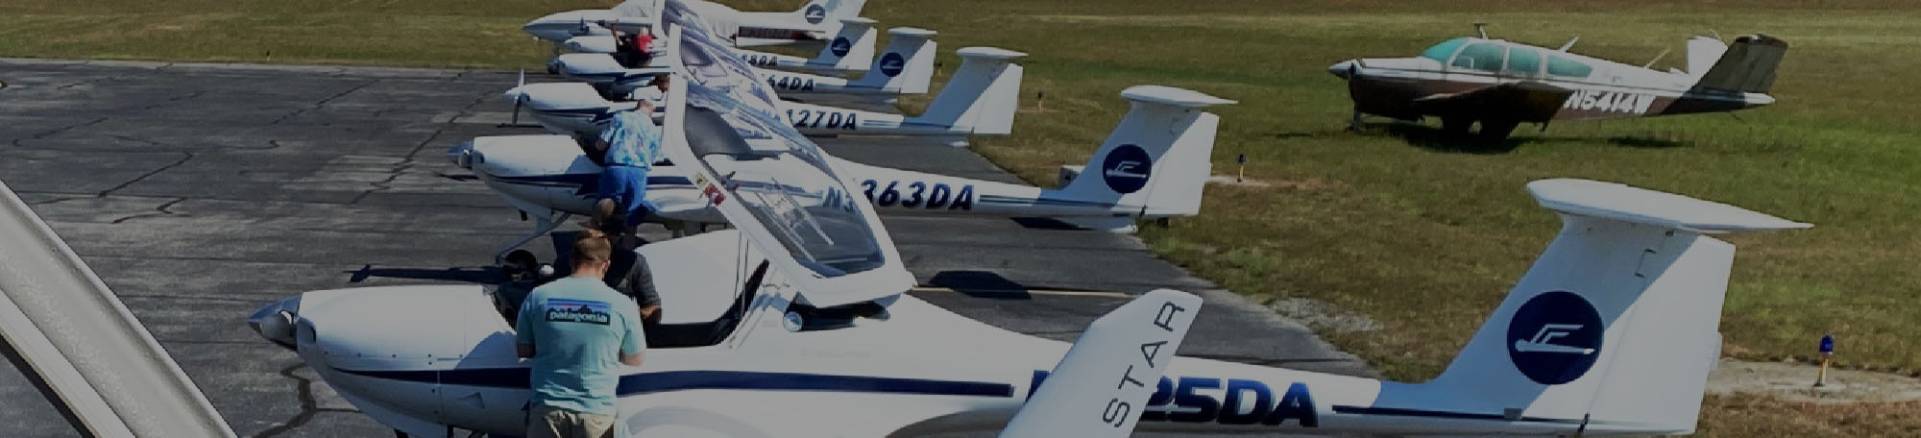 Dragonfly Aviation Aircraft Fleet